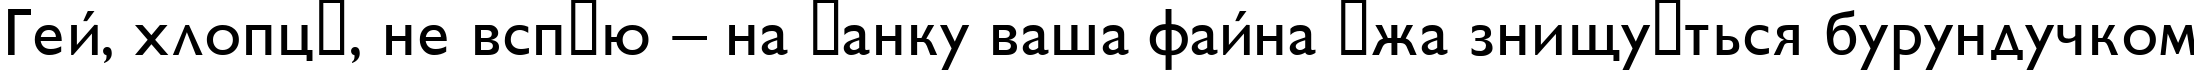 Пример написания шрифтом GillSans текста на украинском